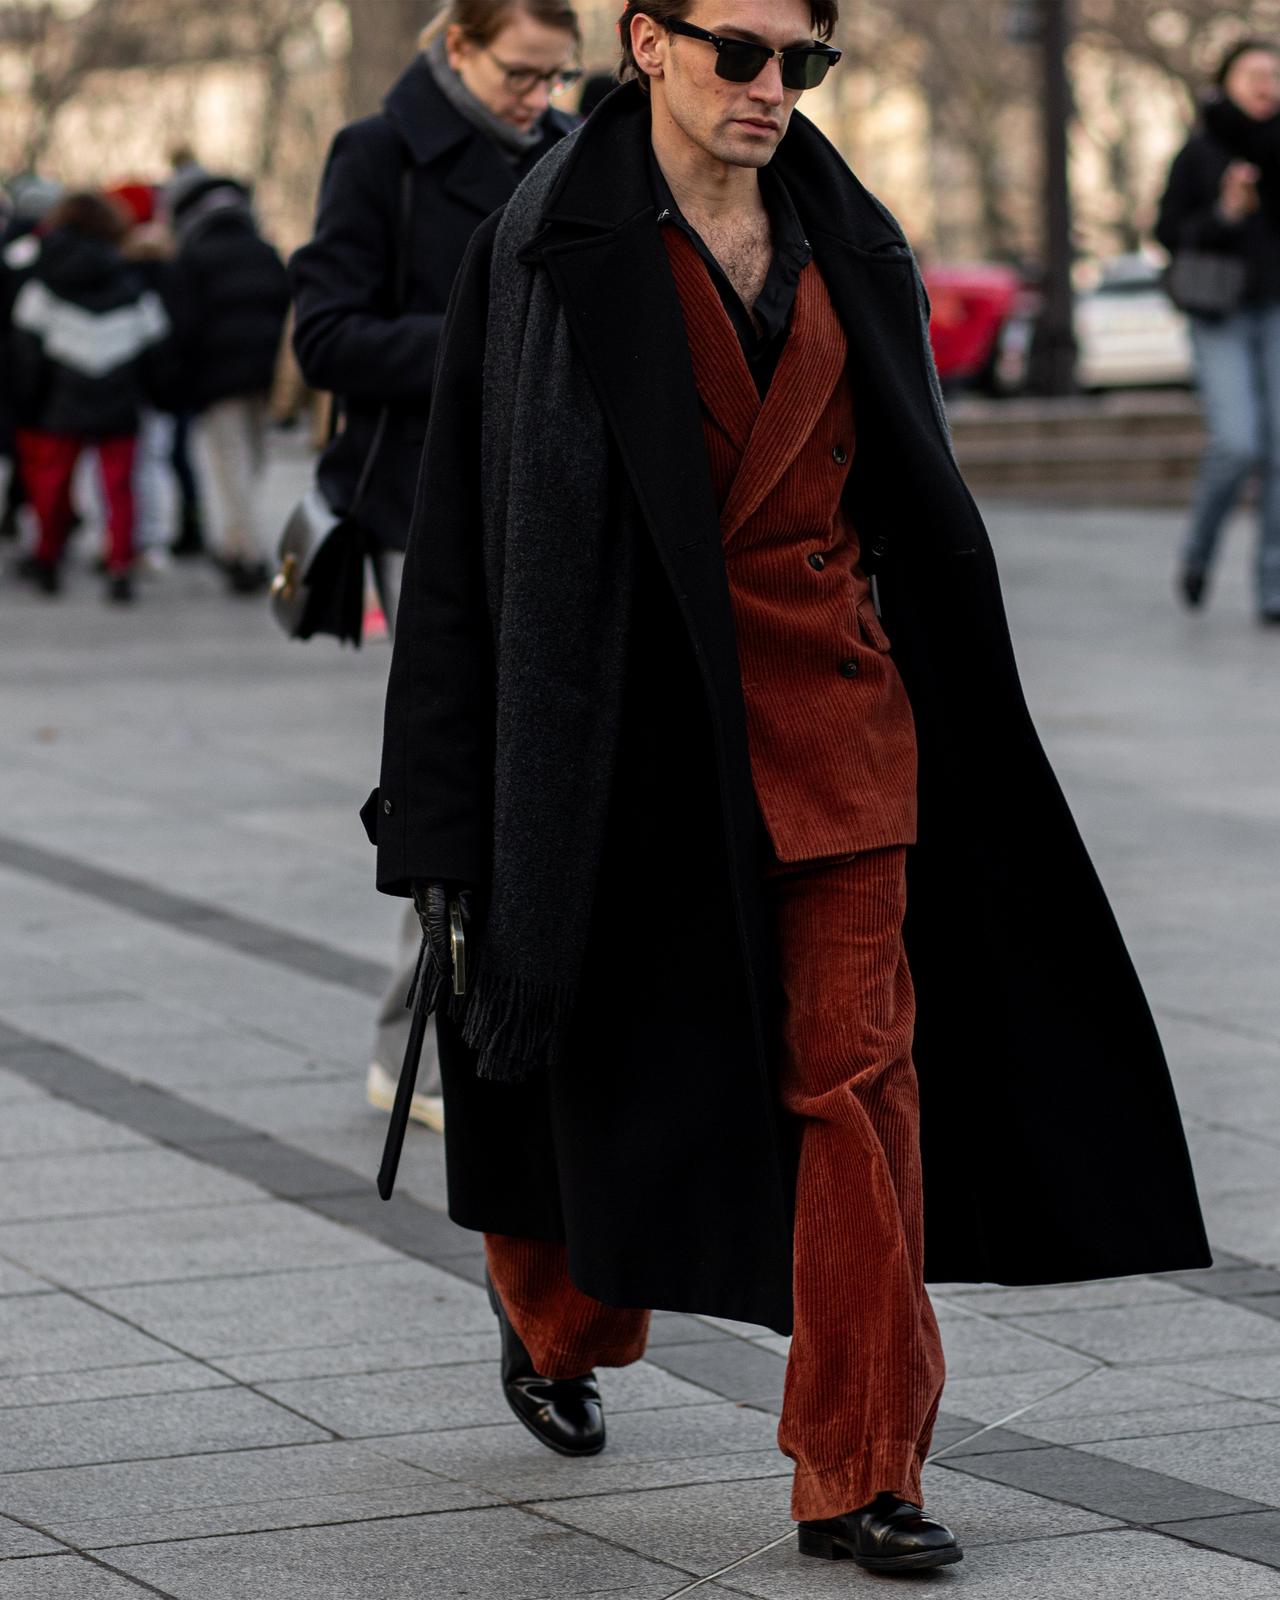 Un homme en costume rouge et manteau noir marchant dans une rue